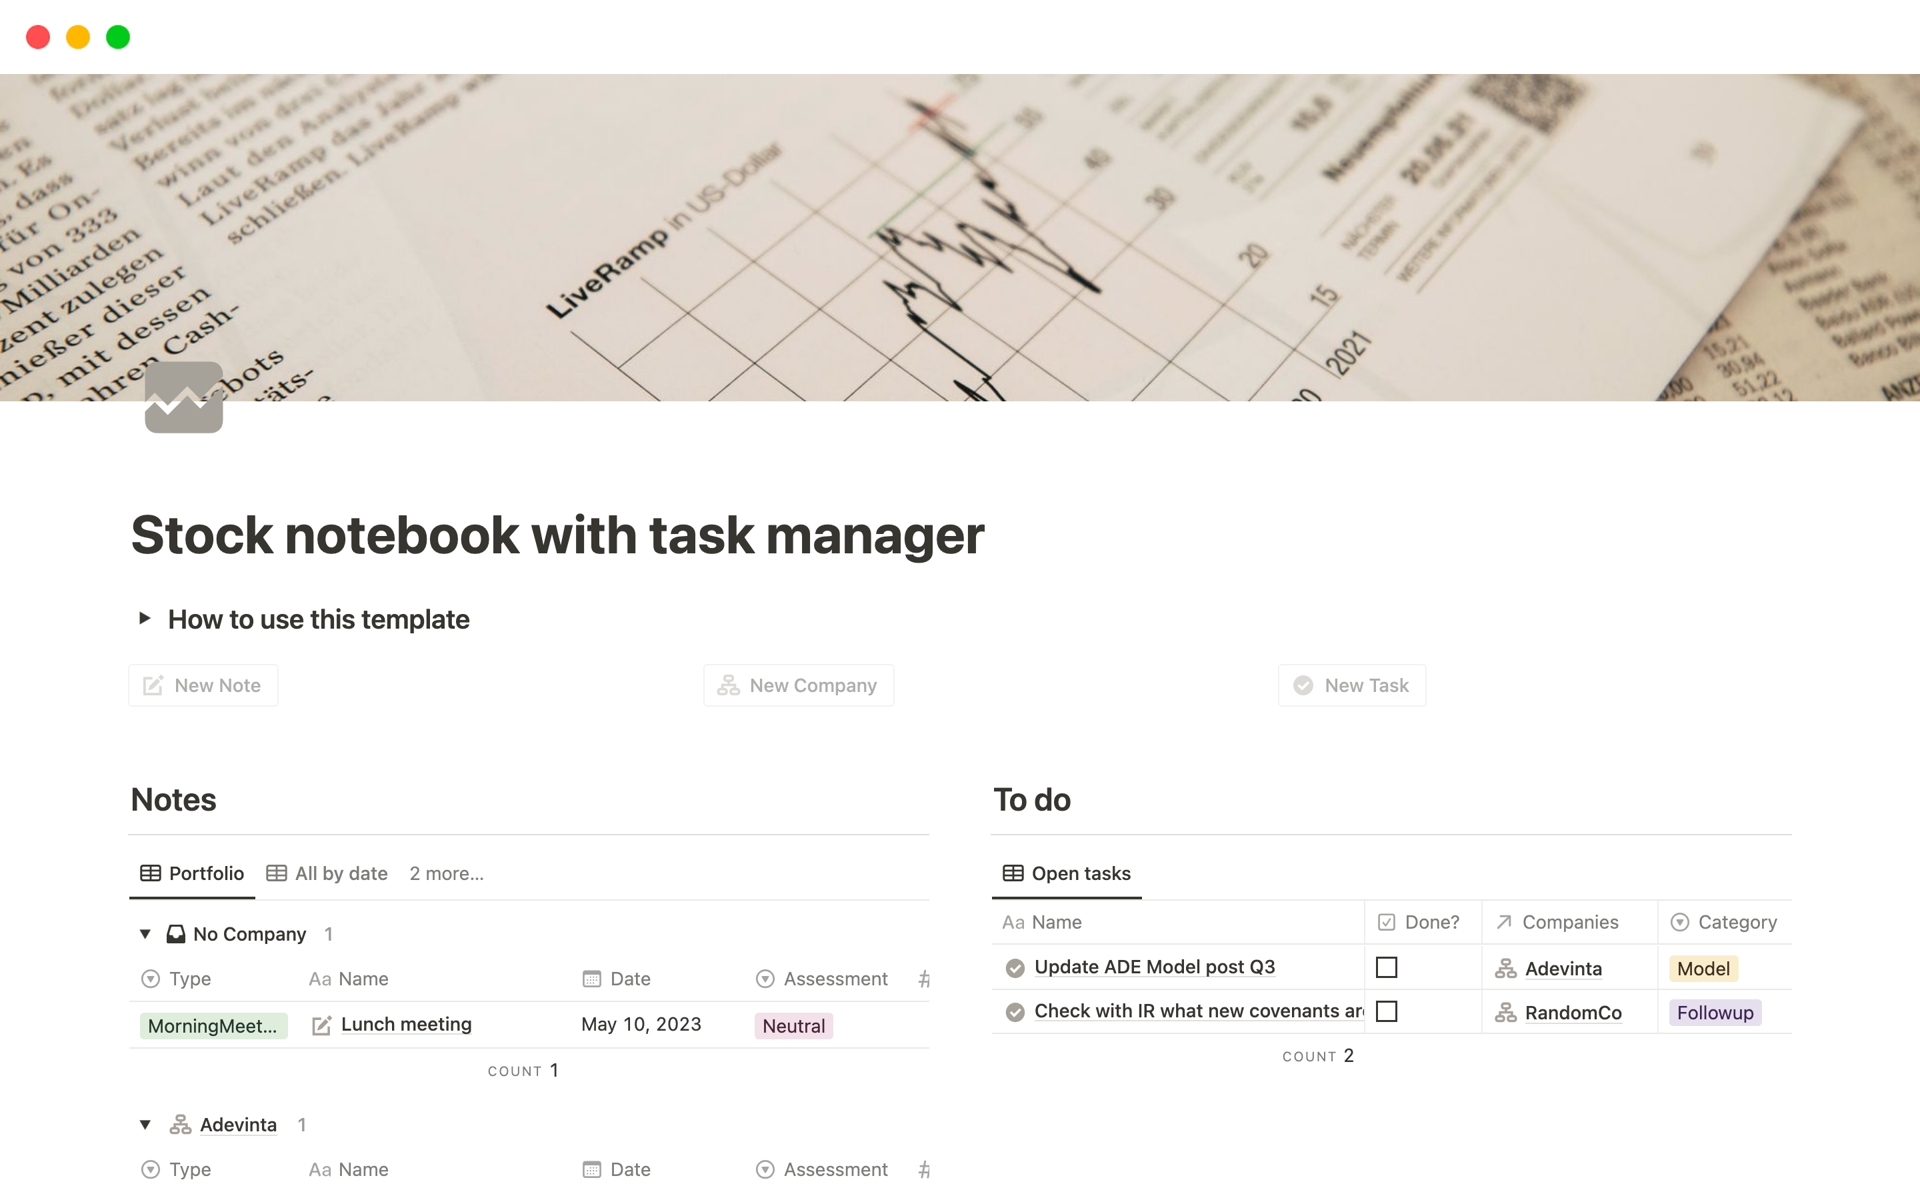 En förhandsgranskning av mallen för Stock notebook with task manager